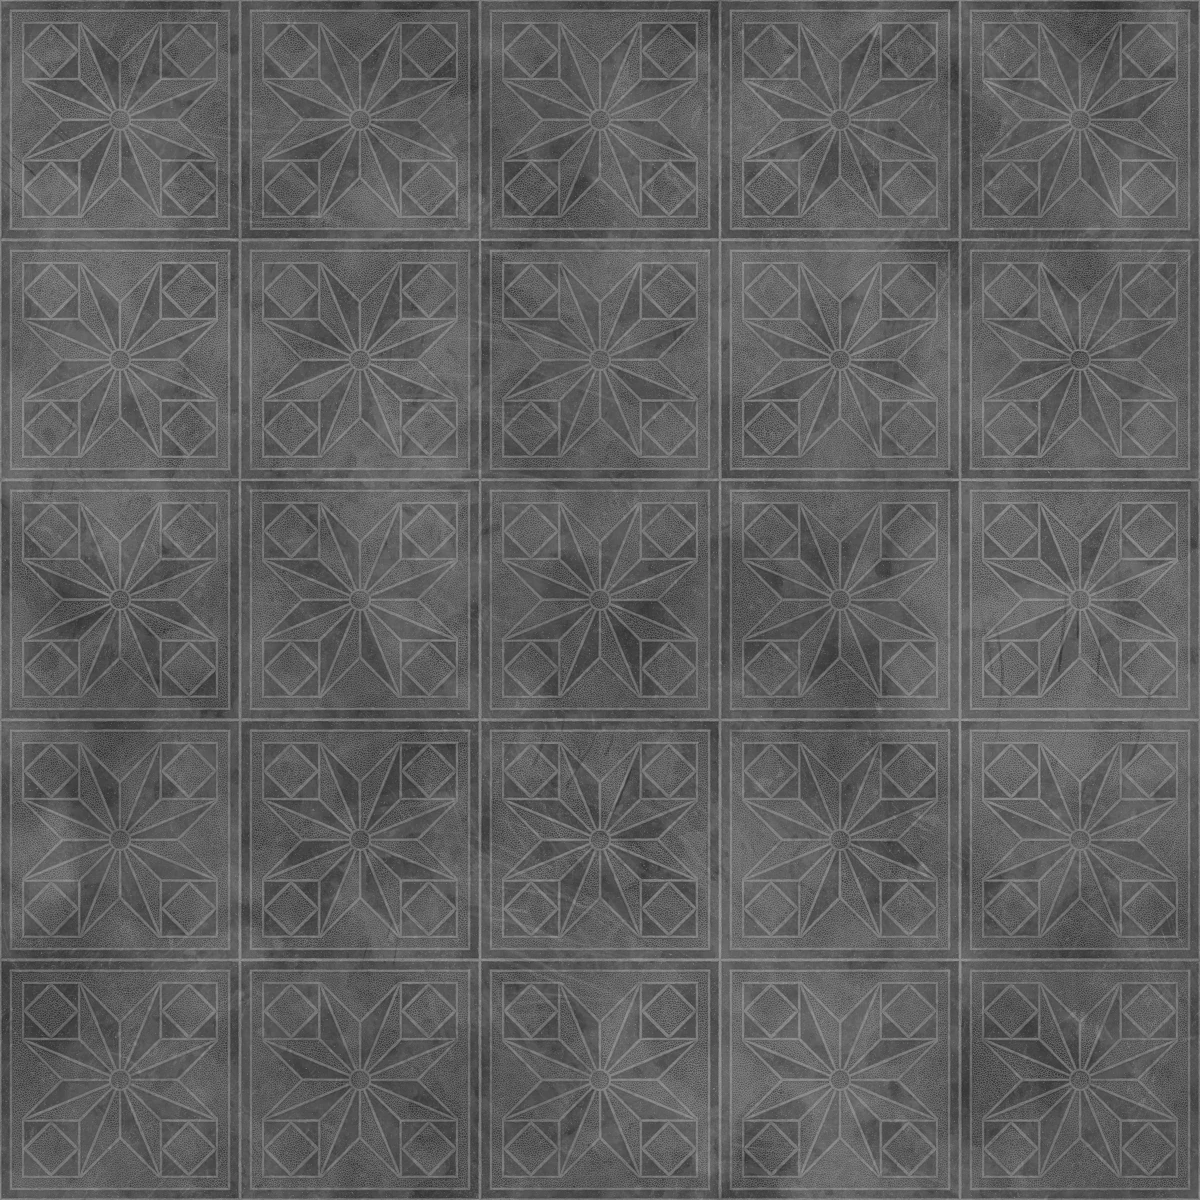 Concrete Patterned Tiles PBR Texture